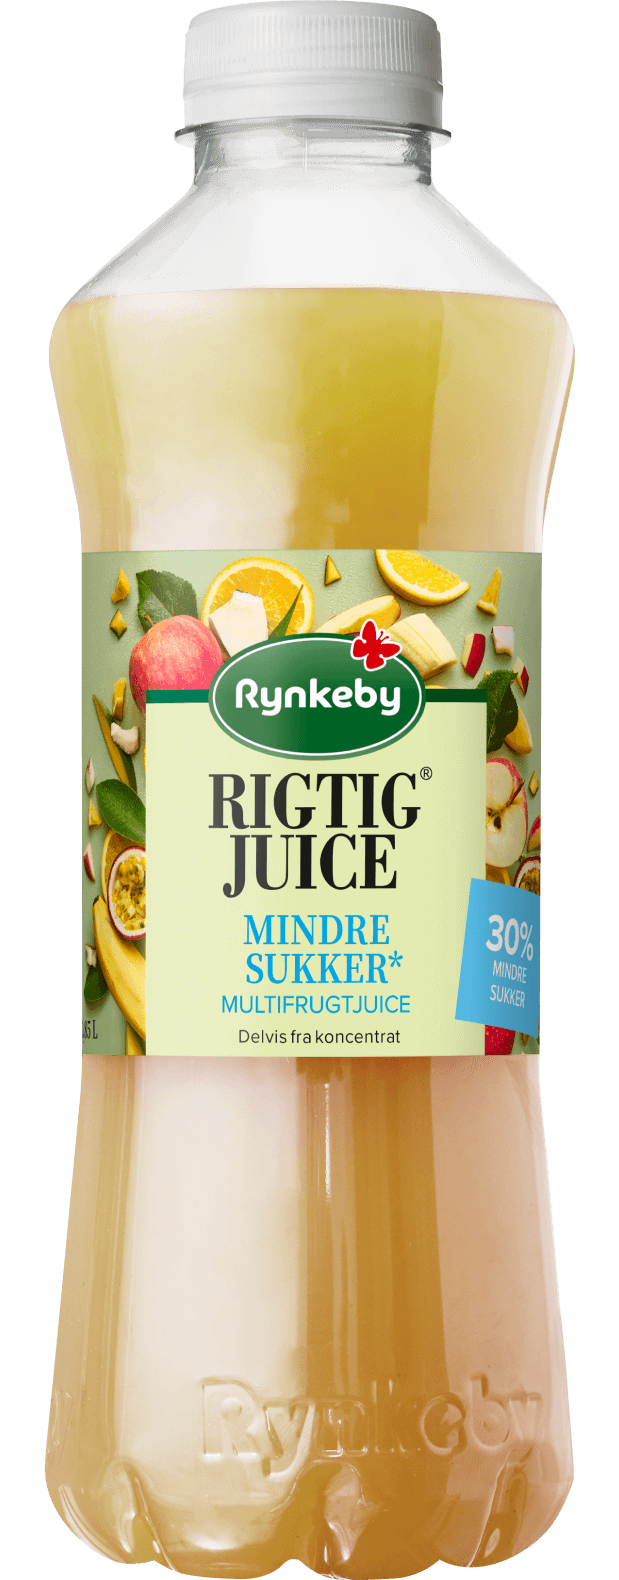 Rigtig® Juice -30% frugtsukker